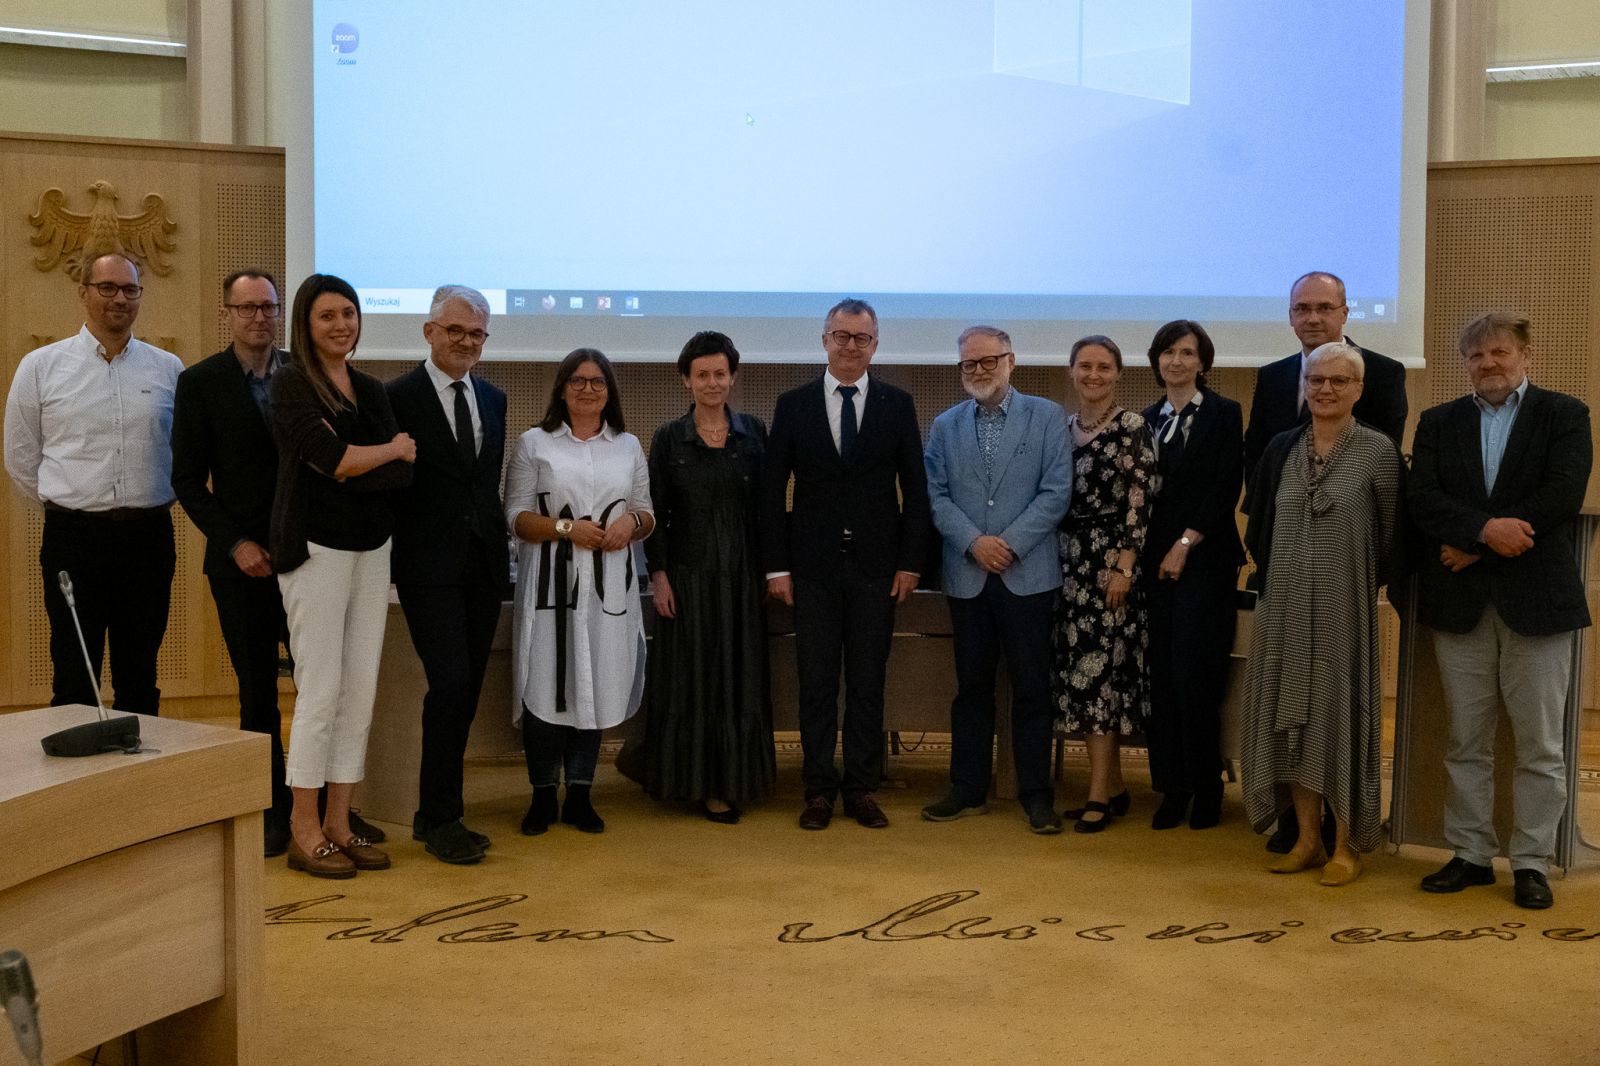 Zdjęcie grupy 13 osób w średnim i starszym wieku, elegancko ubranych, stojących pośrodku Salonu Mickiewicza pod Kopułą Collegium Maius.